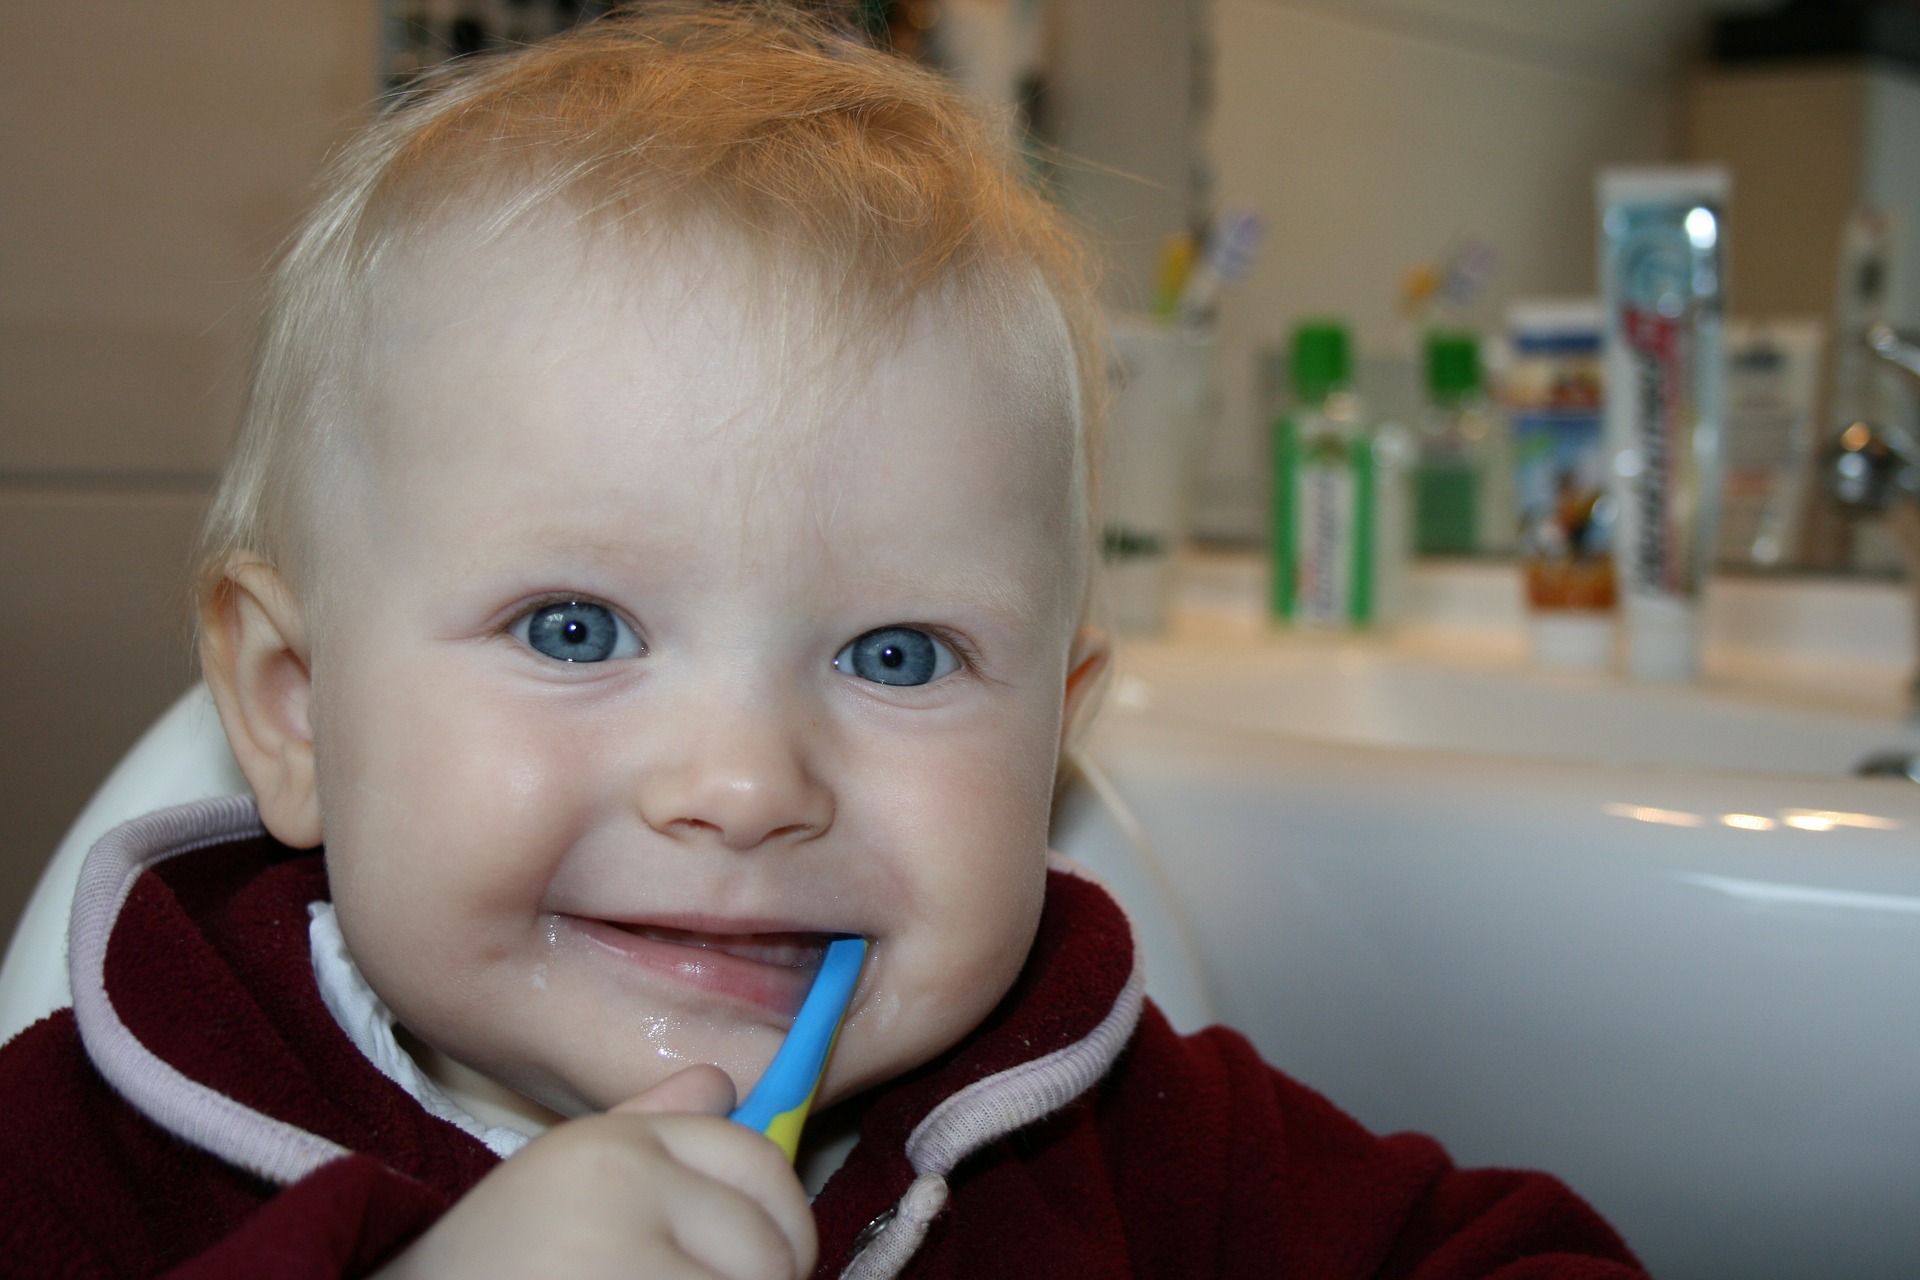 Teething baby symptoms